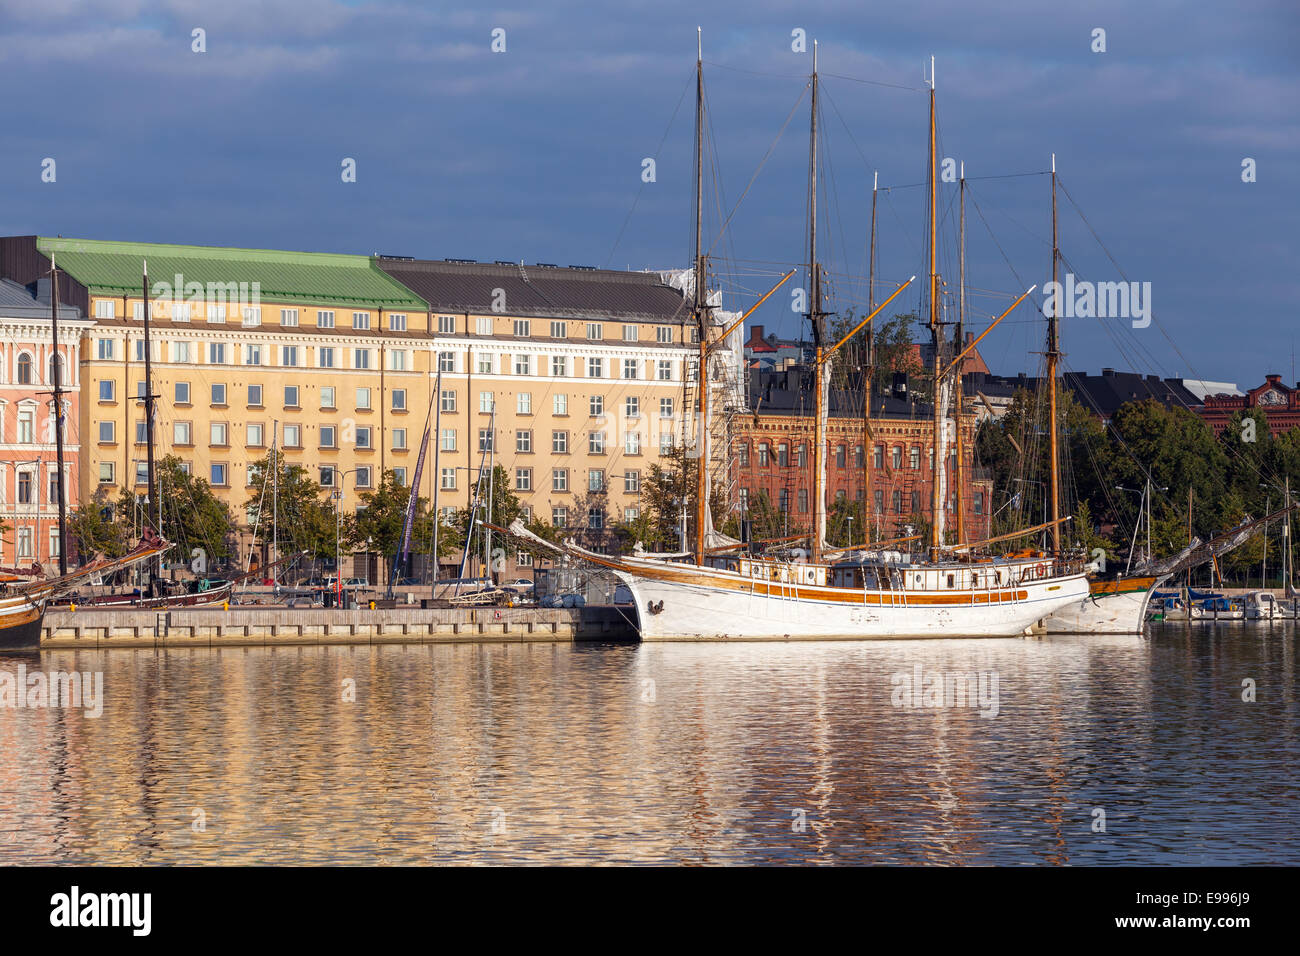 HELSINKI, Finnland - 14. September 2014: Kai von Helsinki mit ankern alte Segelschiffe und klassischen Gebäudefassaden in der mo Stockfoto